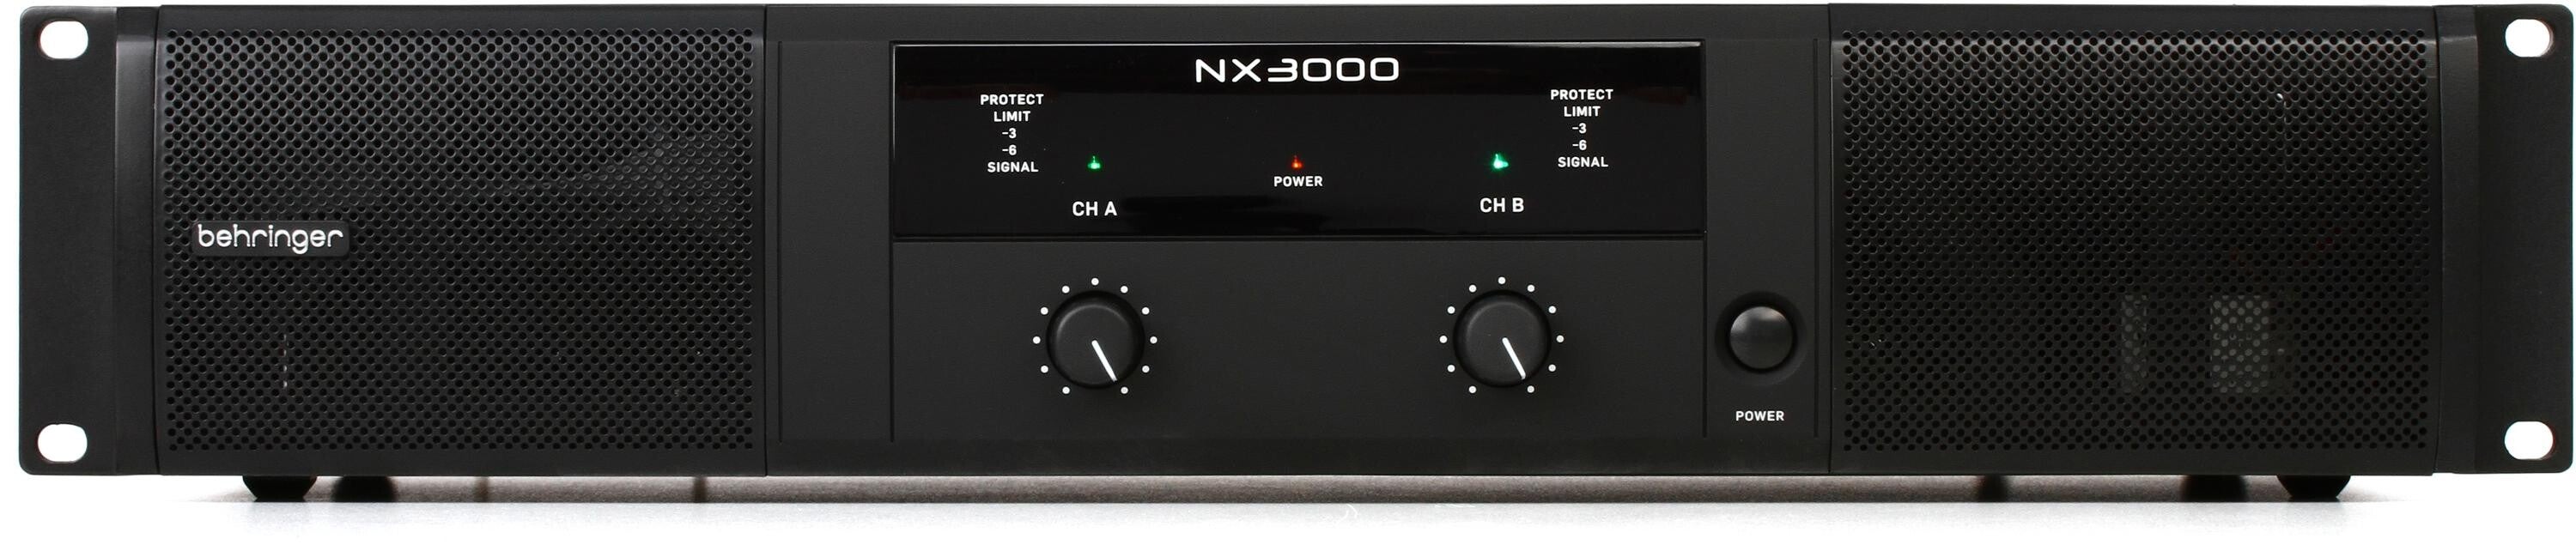 Behringer NX3000 3000W 2-channel Power Amplifier | Sweetwater